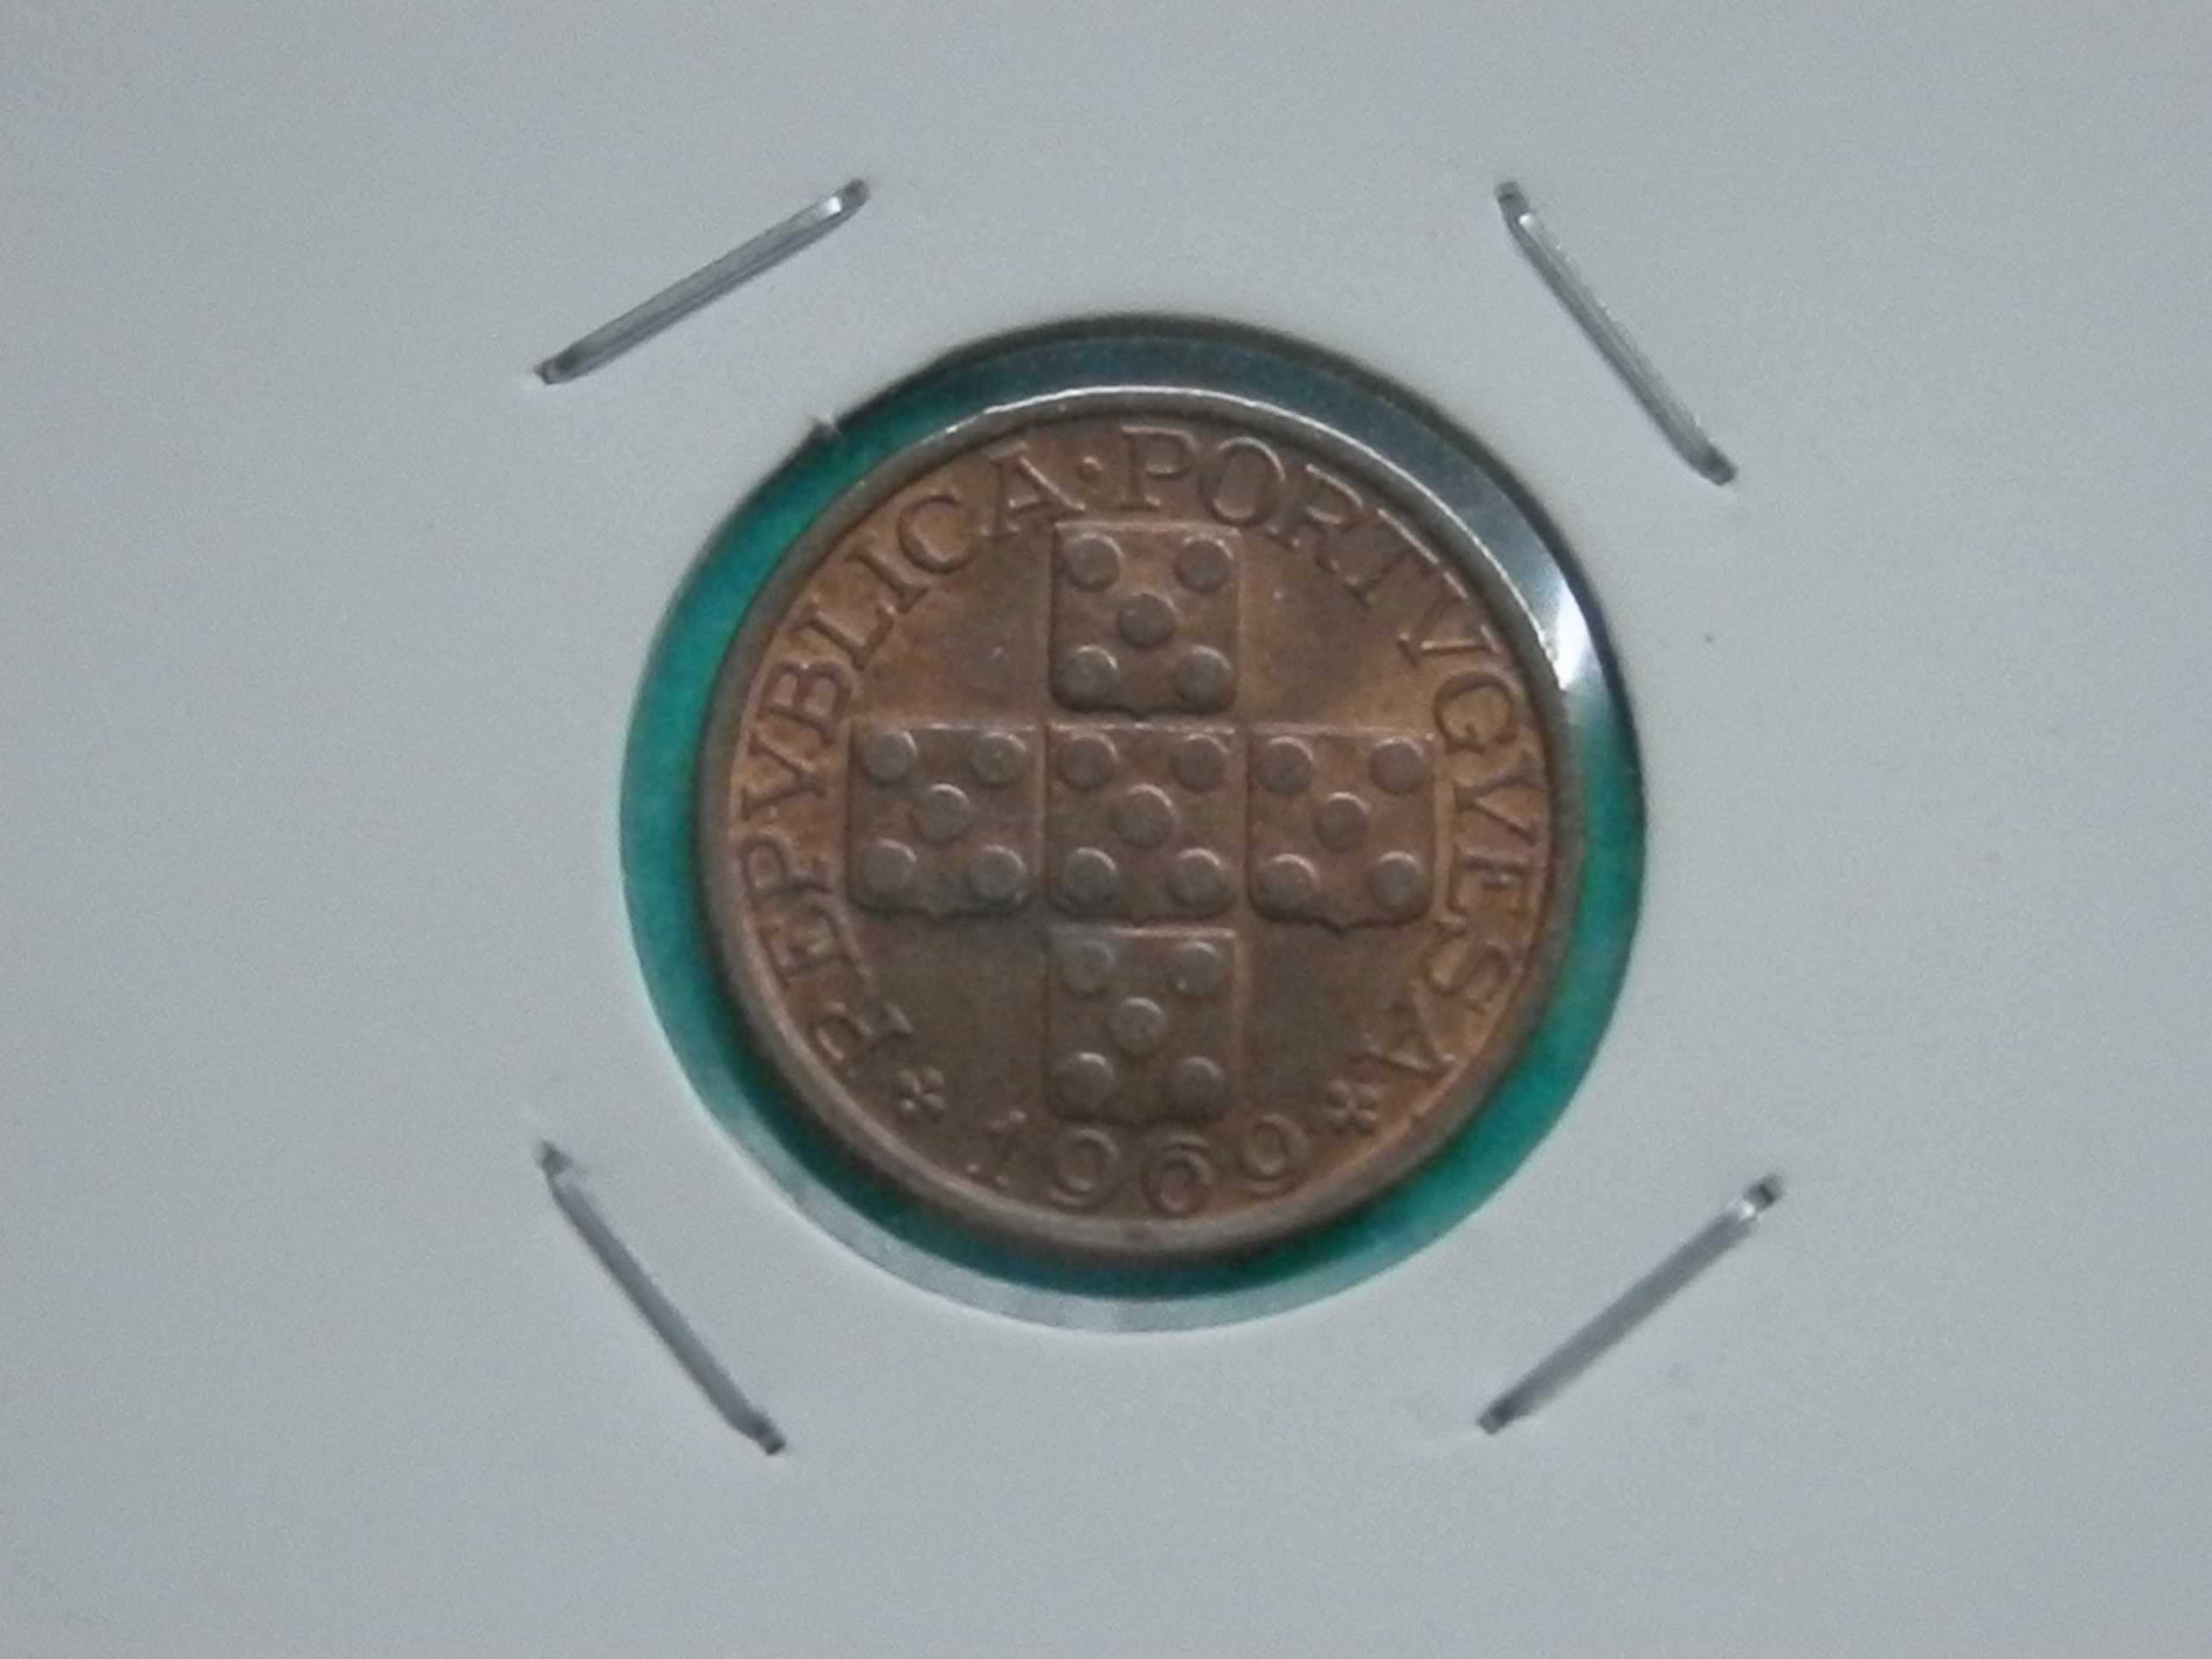 911 - República: X centavos 1969 bronze, por 0,75